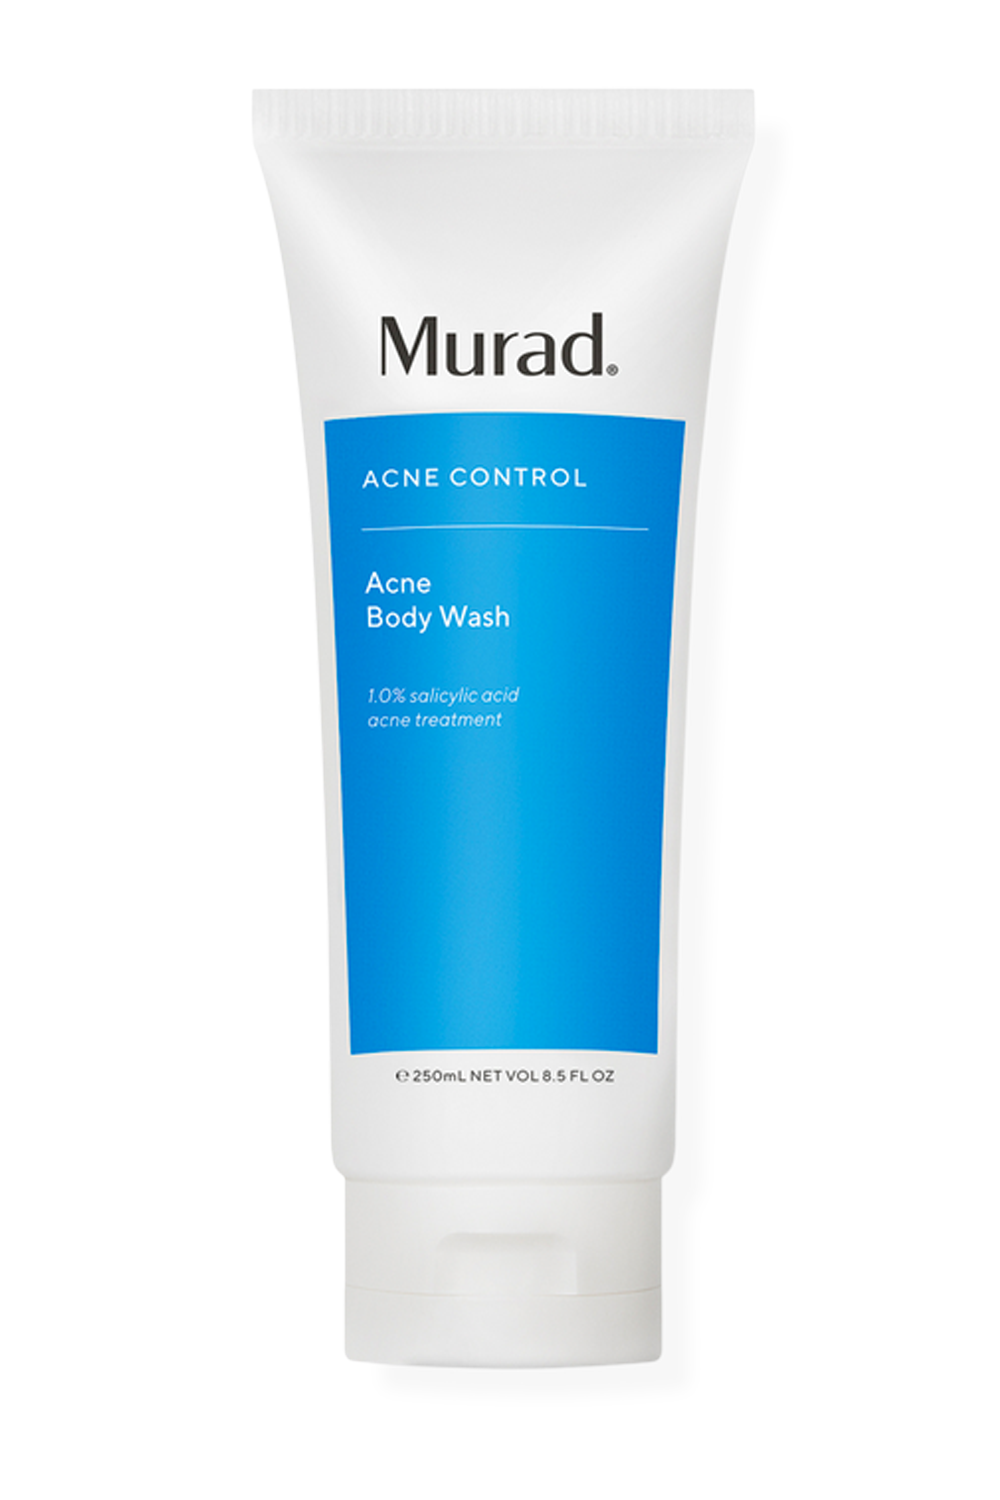 Murad Acne Control Acne Body Wash